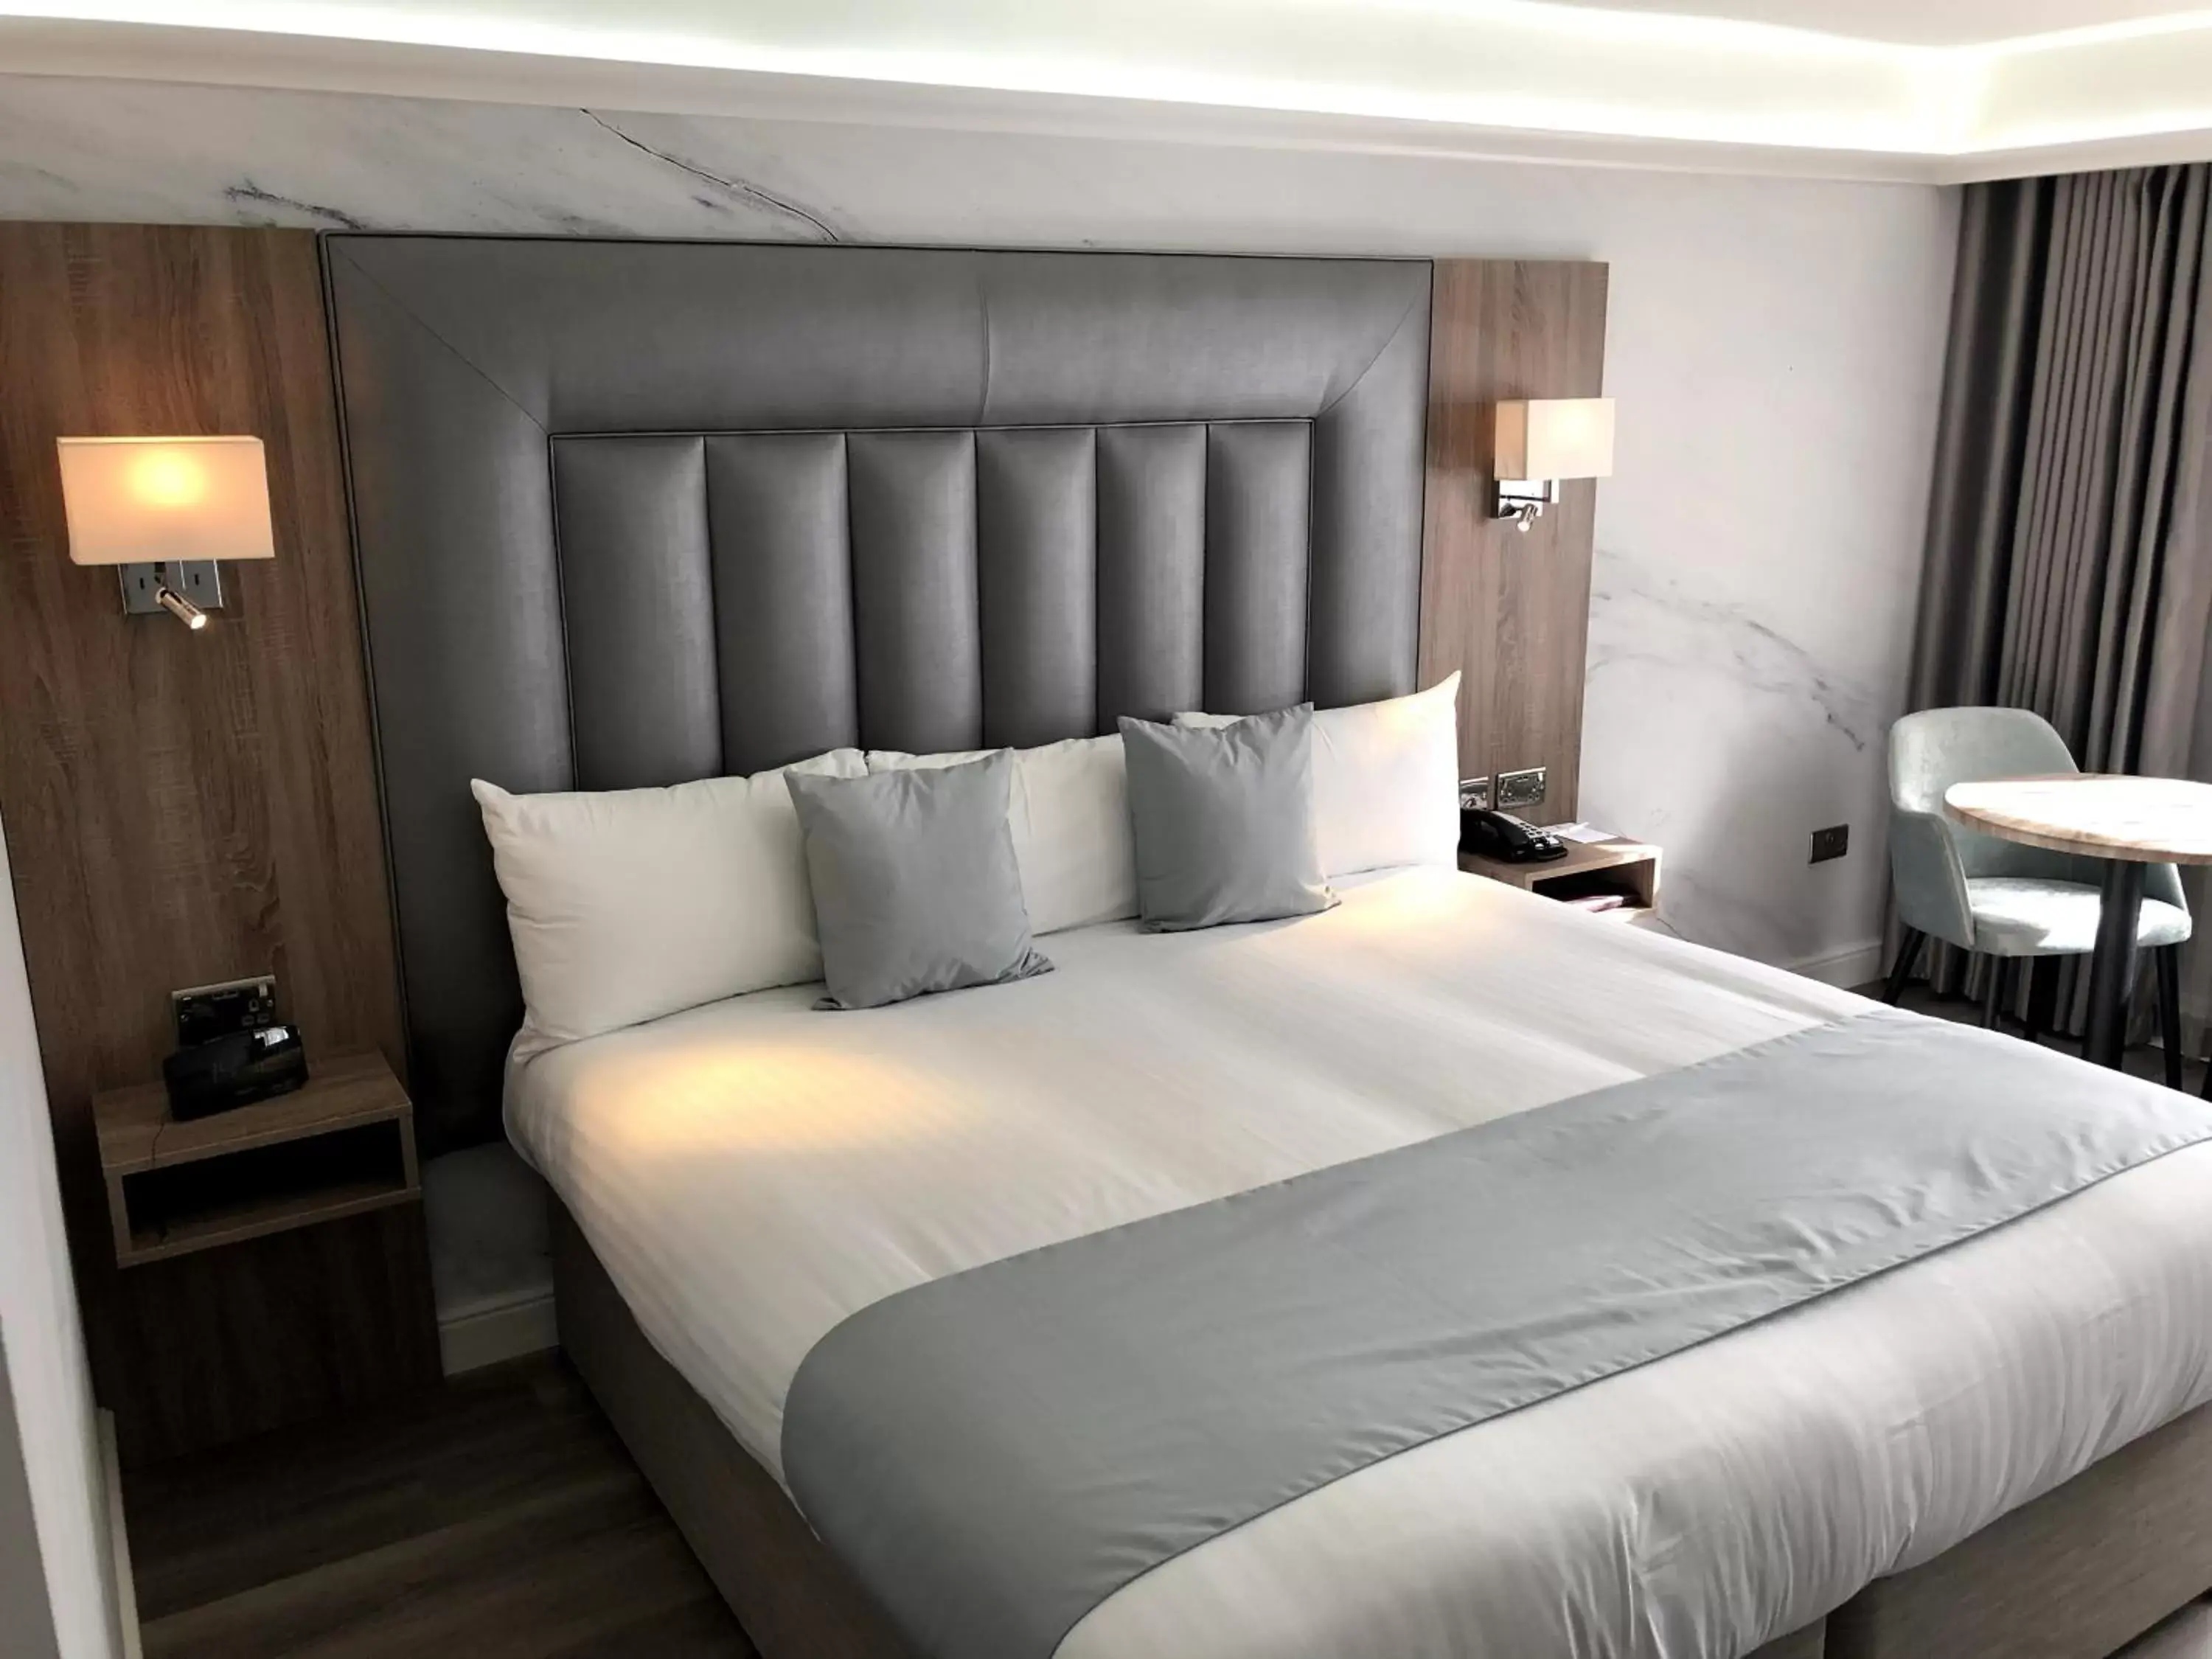 Bedroom, Bed in Best Western Heronston Hotel & Spa